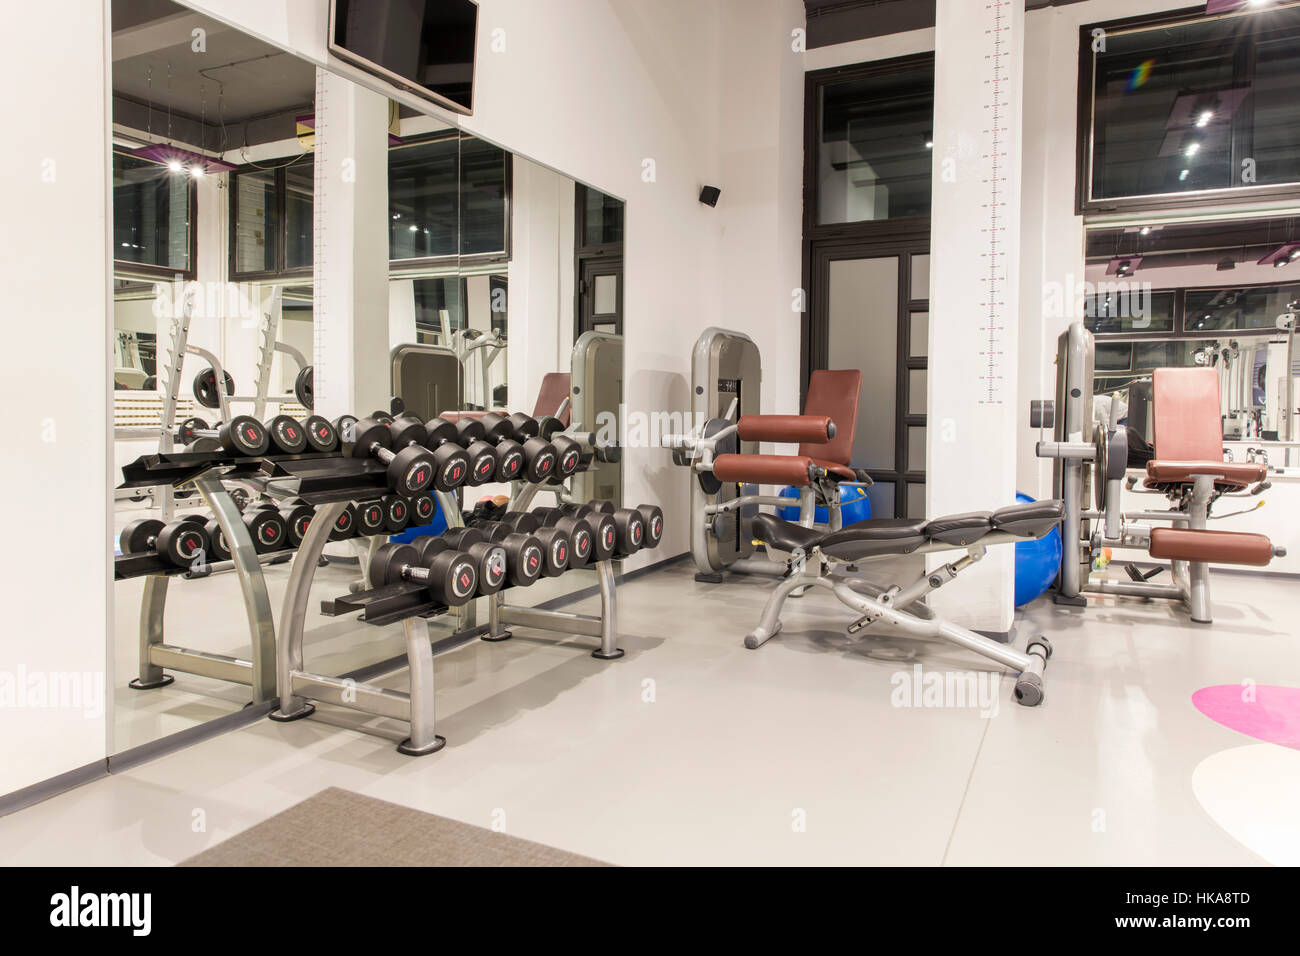 Innere des Fitness-Studio für bodybuilding Stockfoto